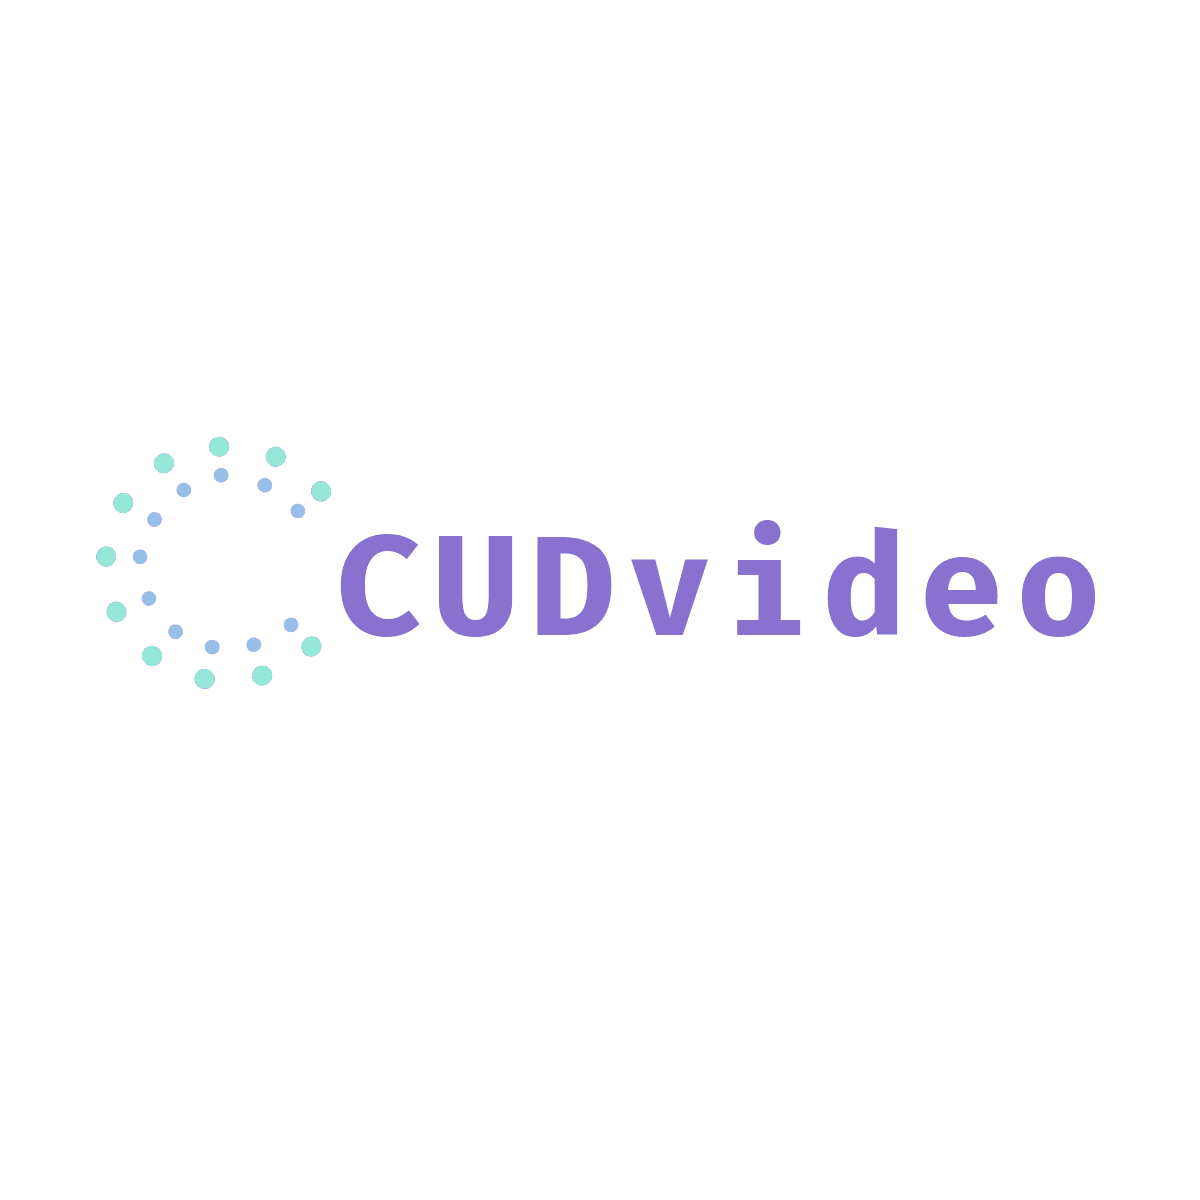 CUDvideo